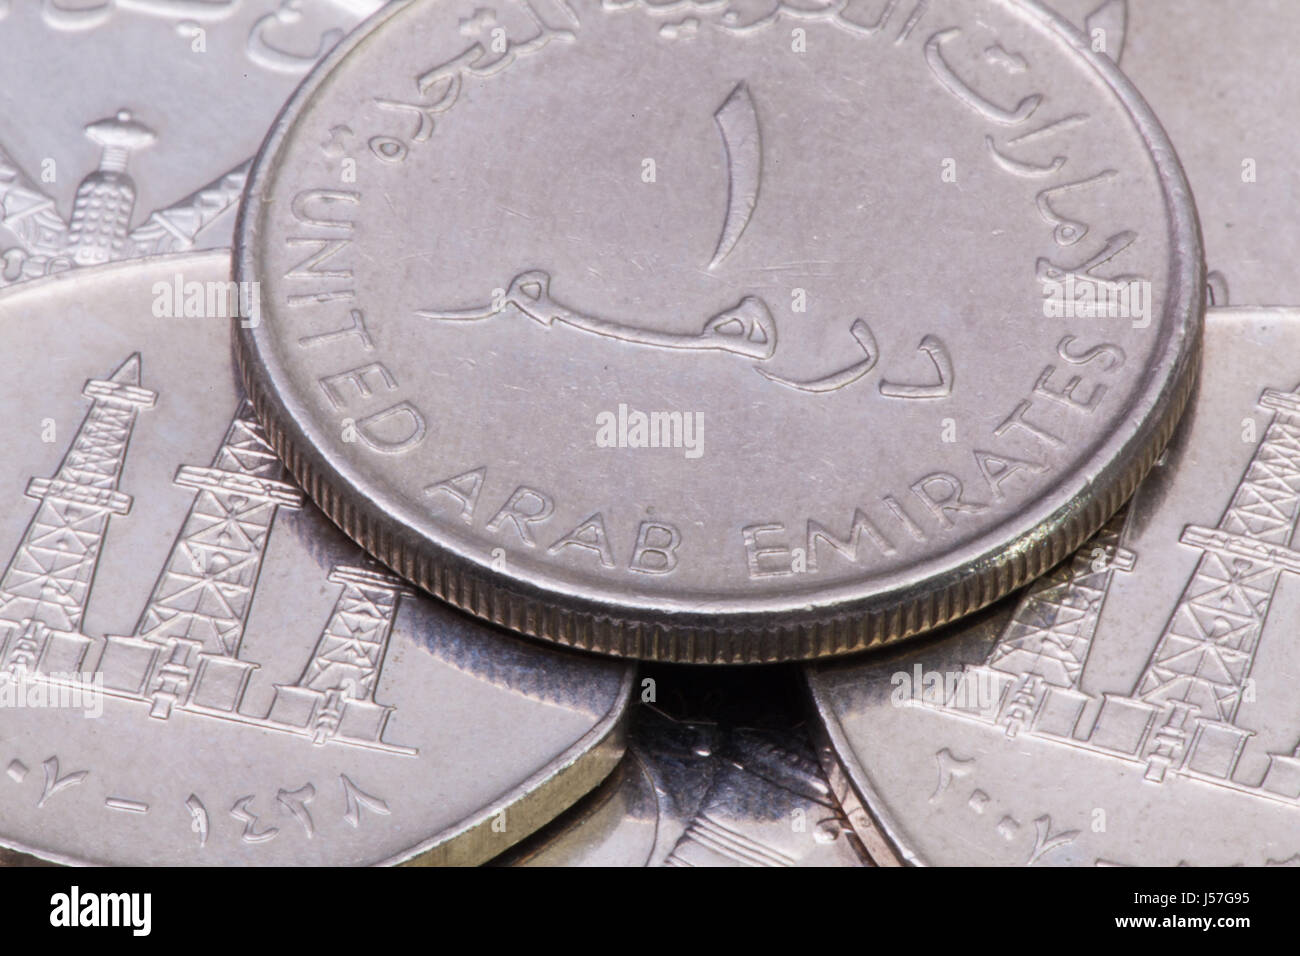 Dettaglio di diversi Emirati Arabi Uniti Dirhams monete sul tavolo. Foto Stock